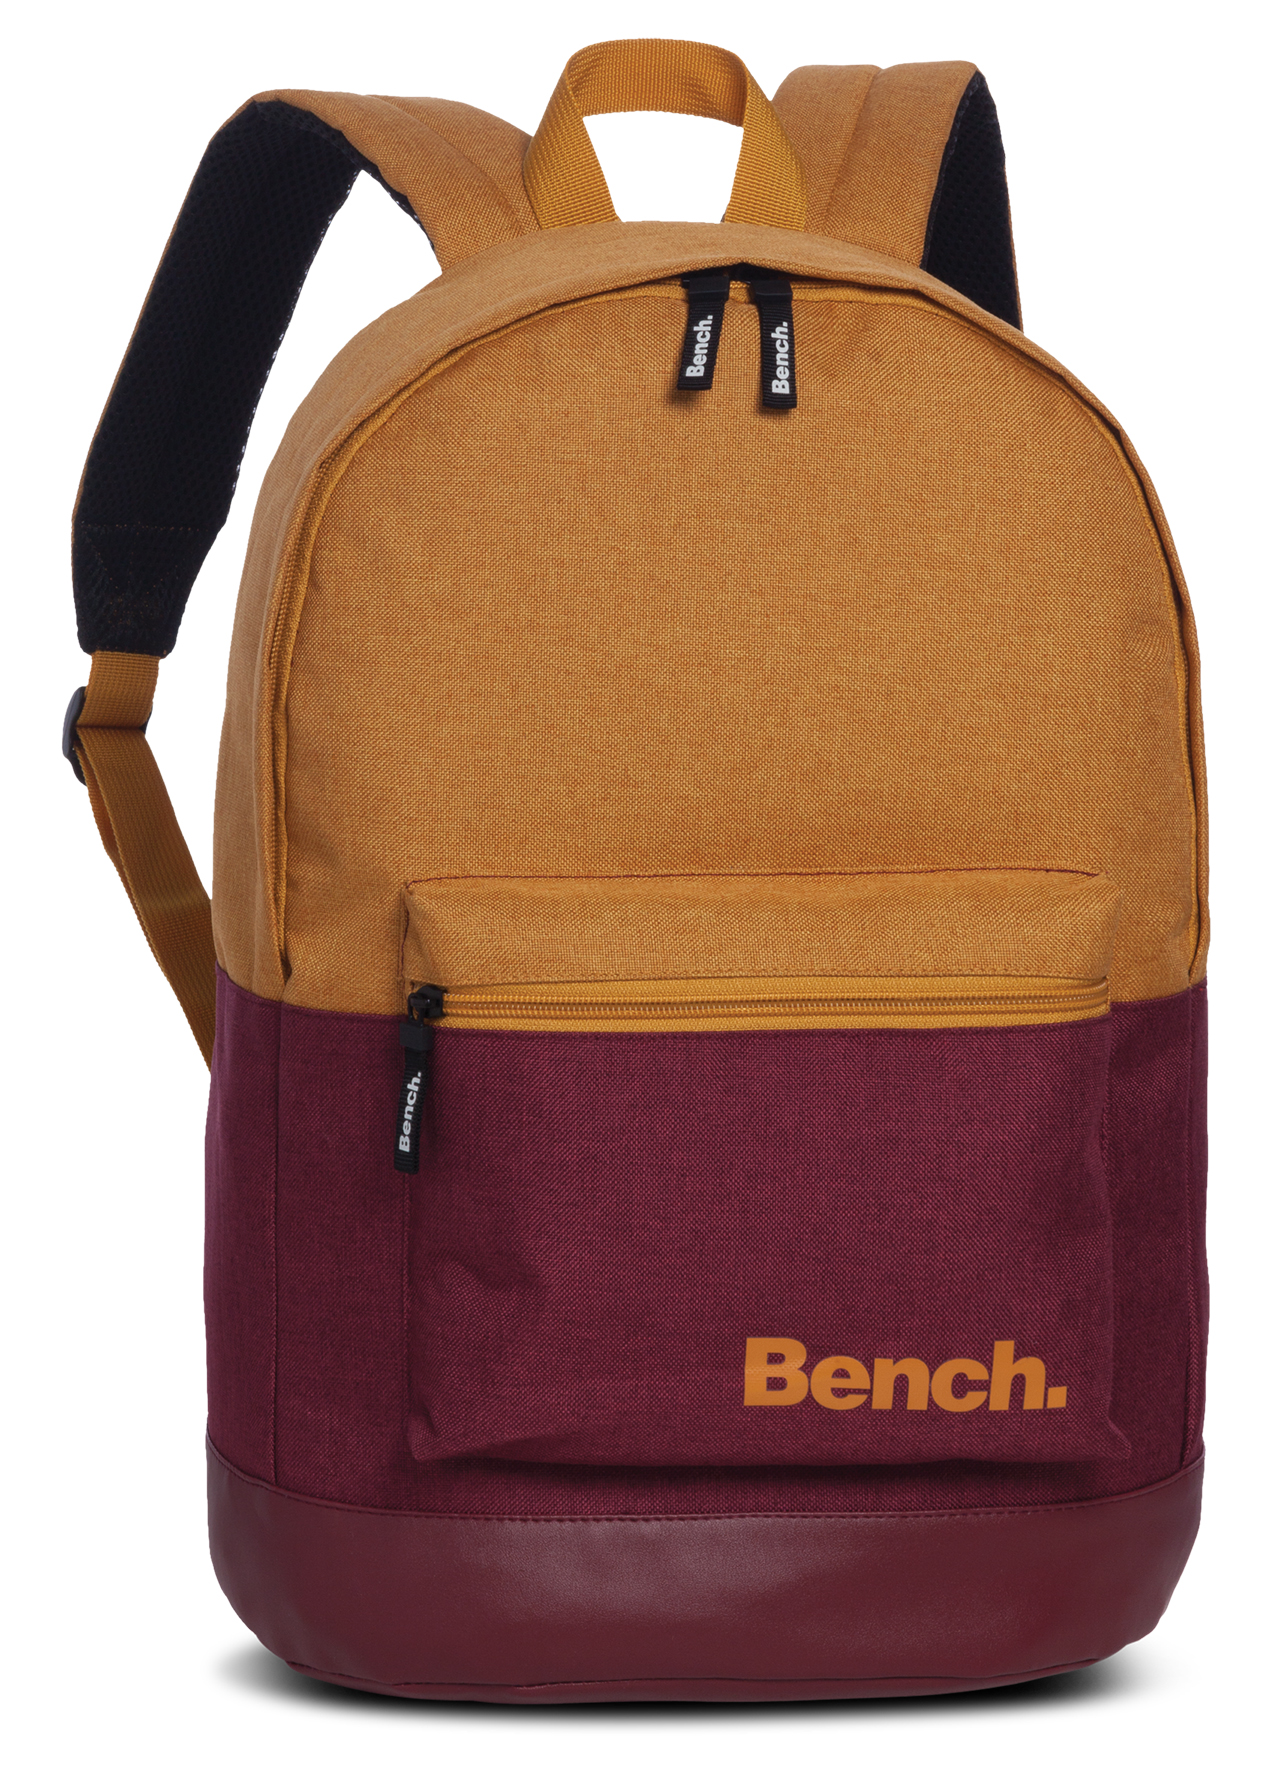 Levně Bench. Bench. classic daypack batoh 16L - okrová/blackberry